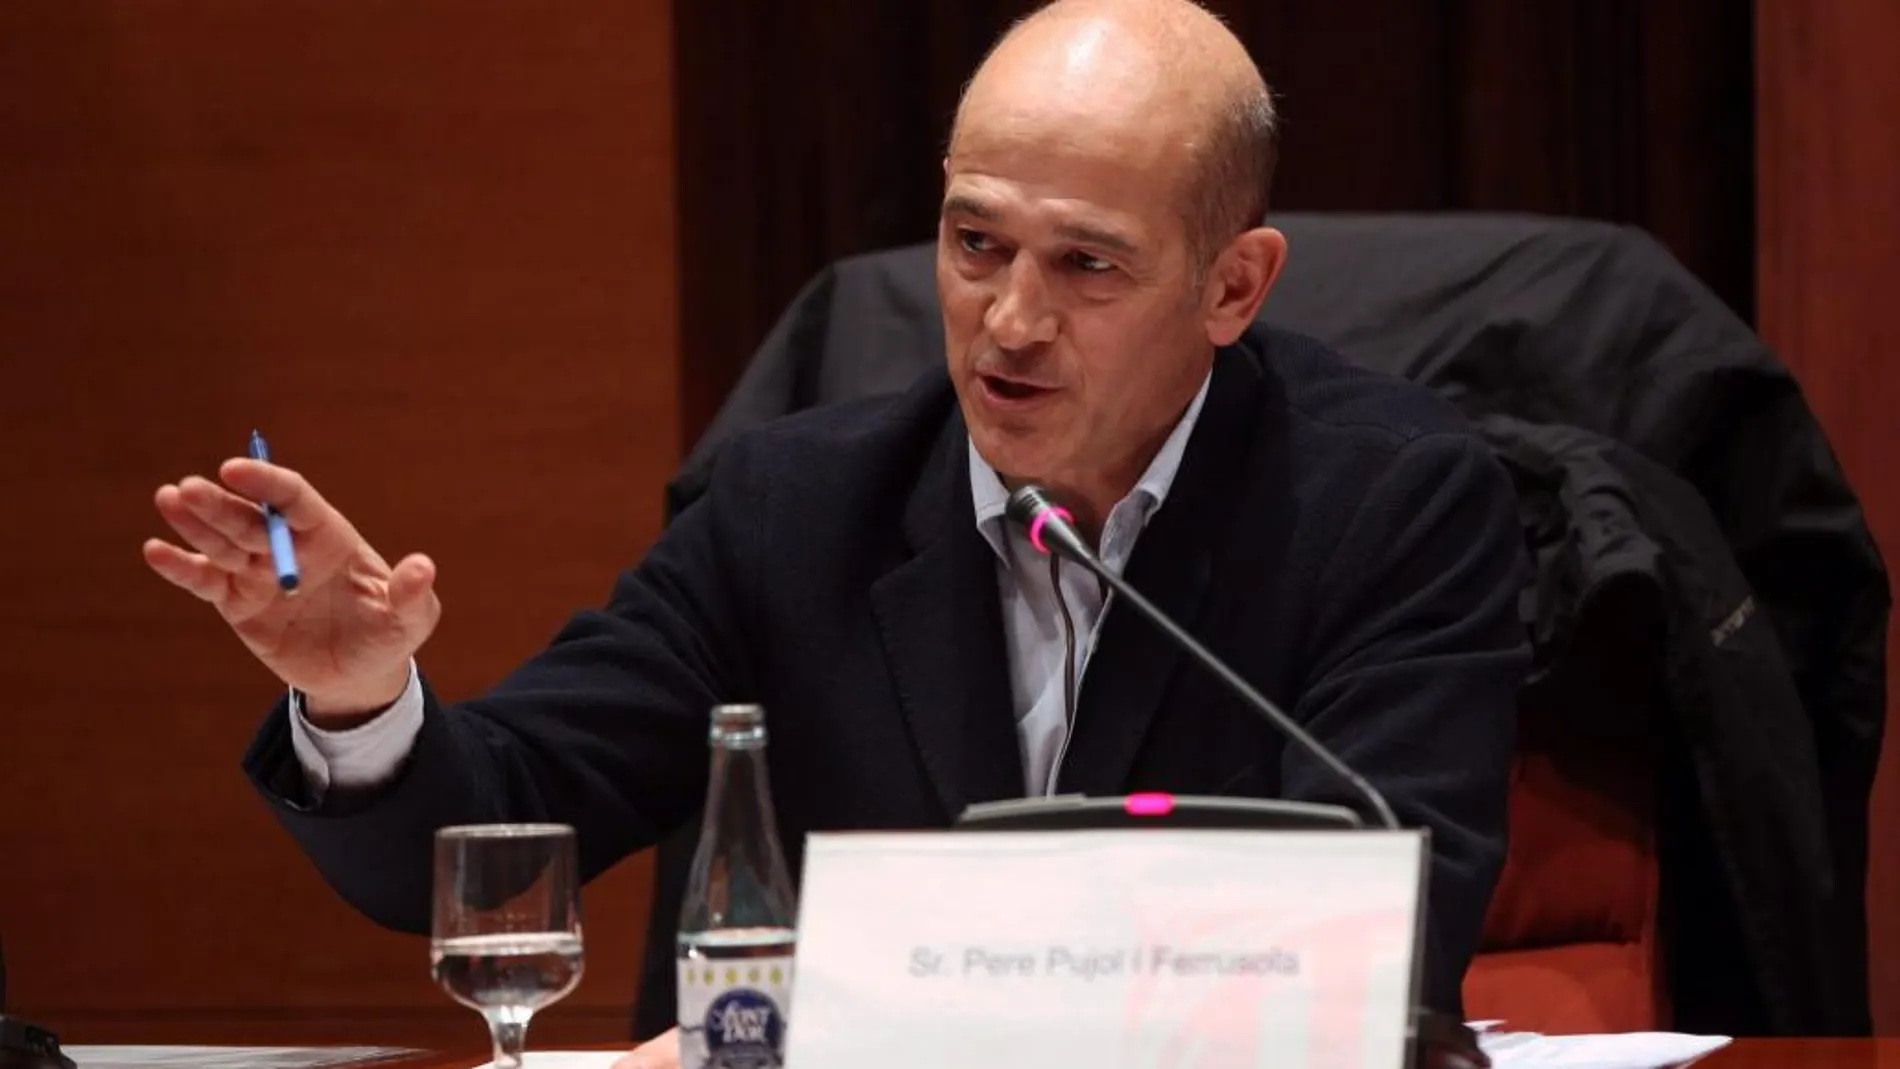 Pere Pujol, hijo del expresidente de la Generalitat, Jordi Pujol, comparece en la comisión sobre fraude fiscal